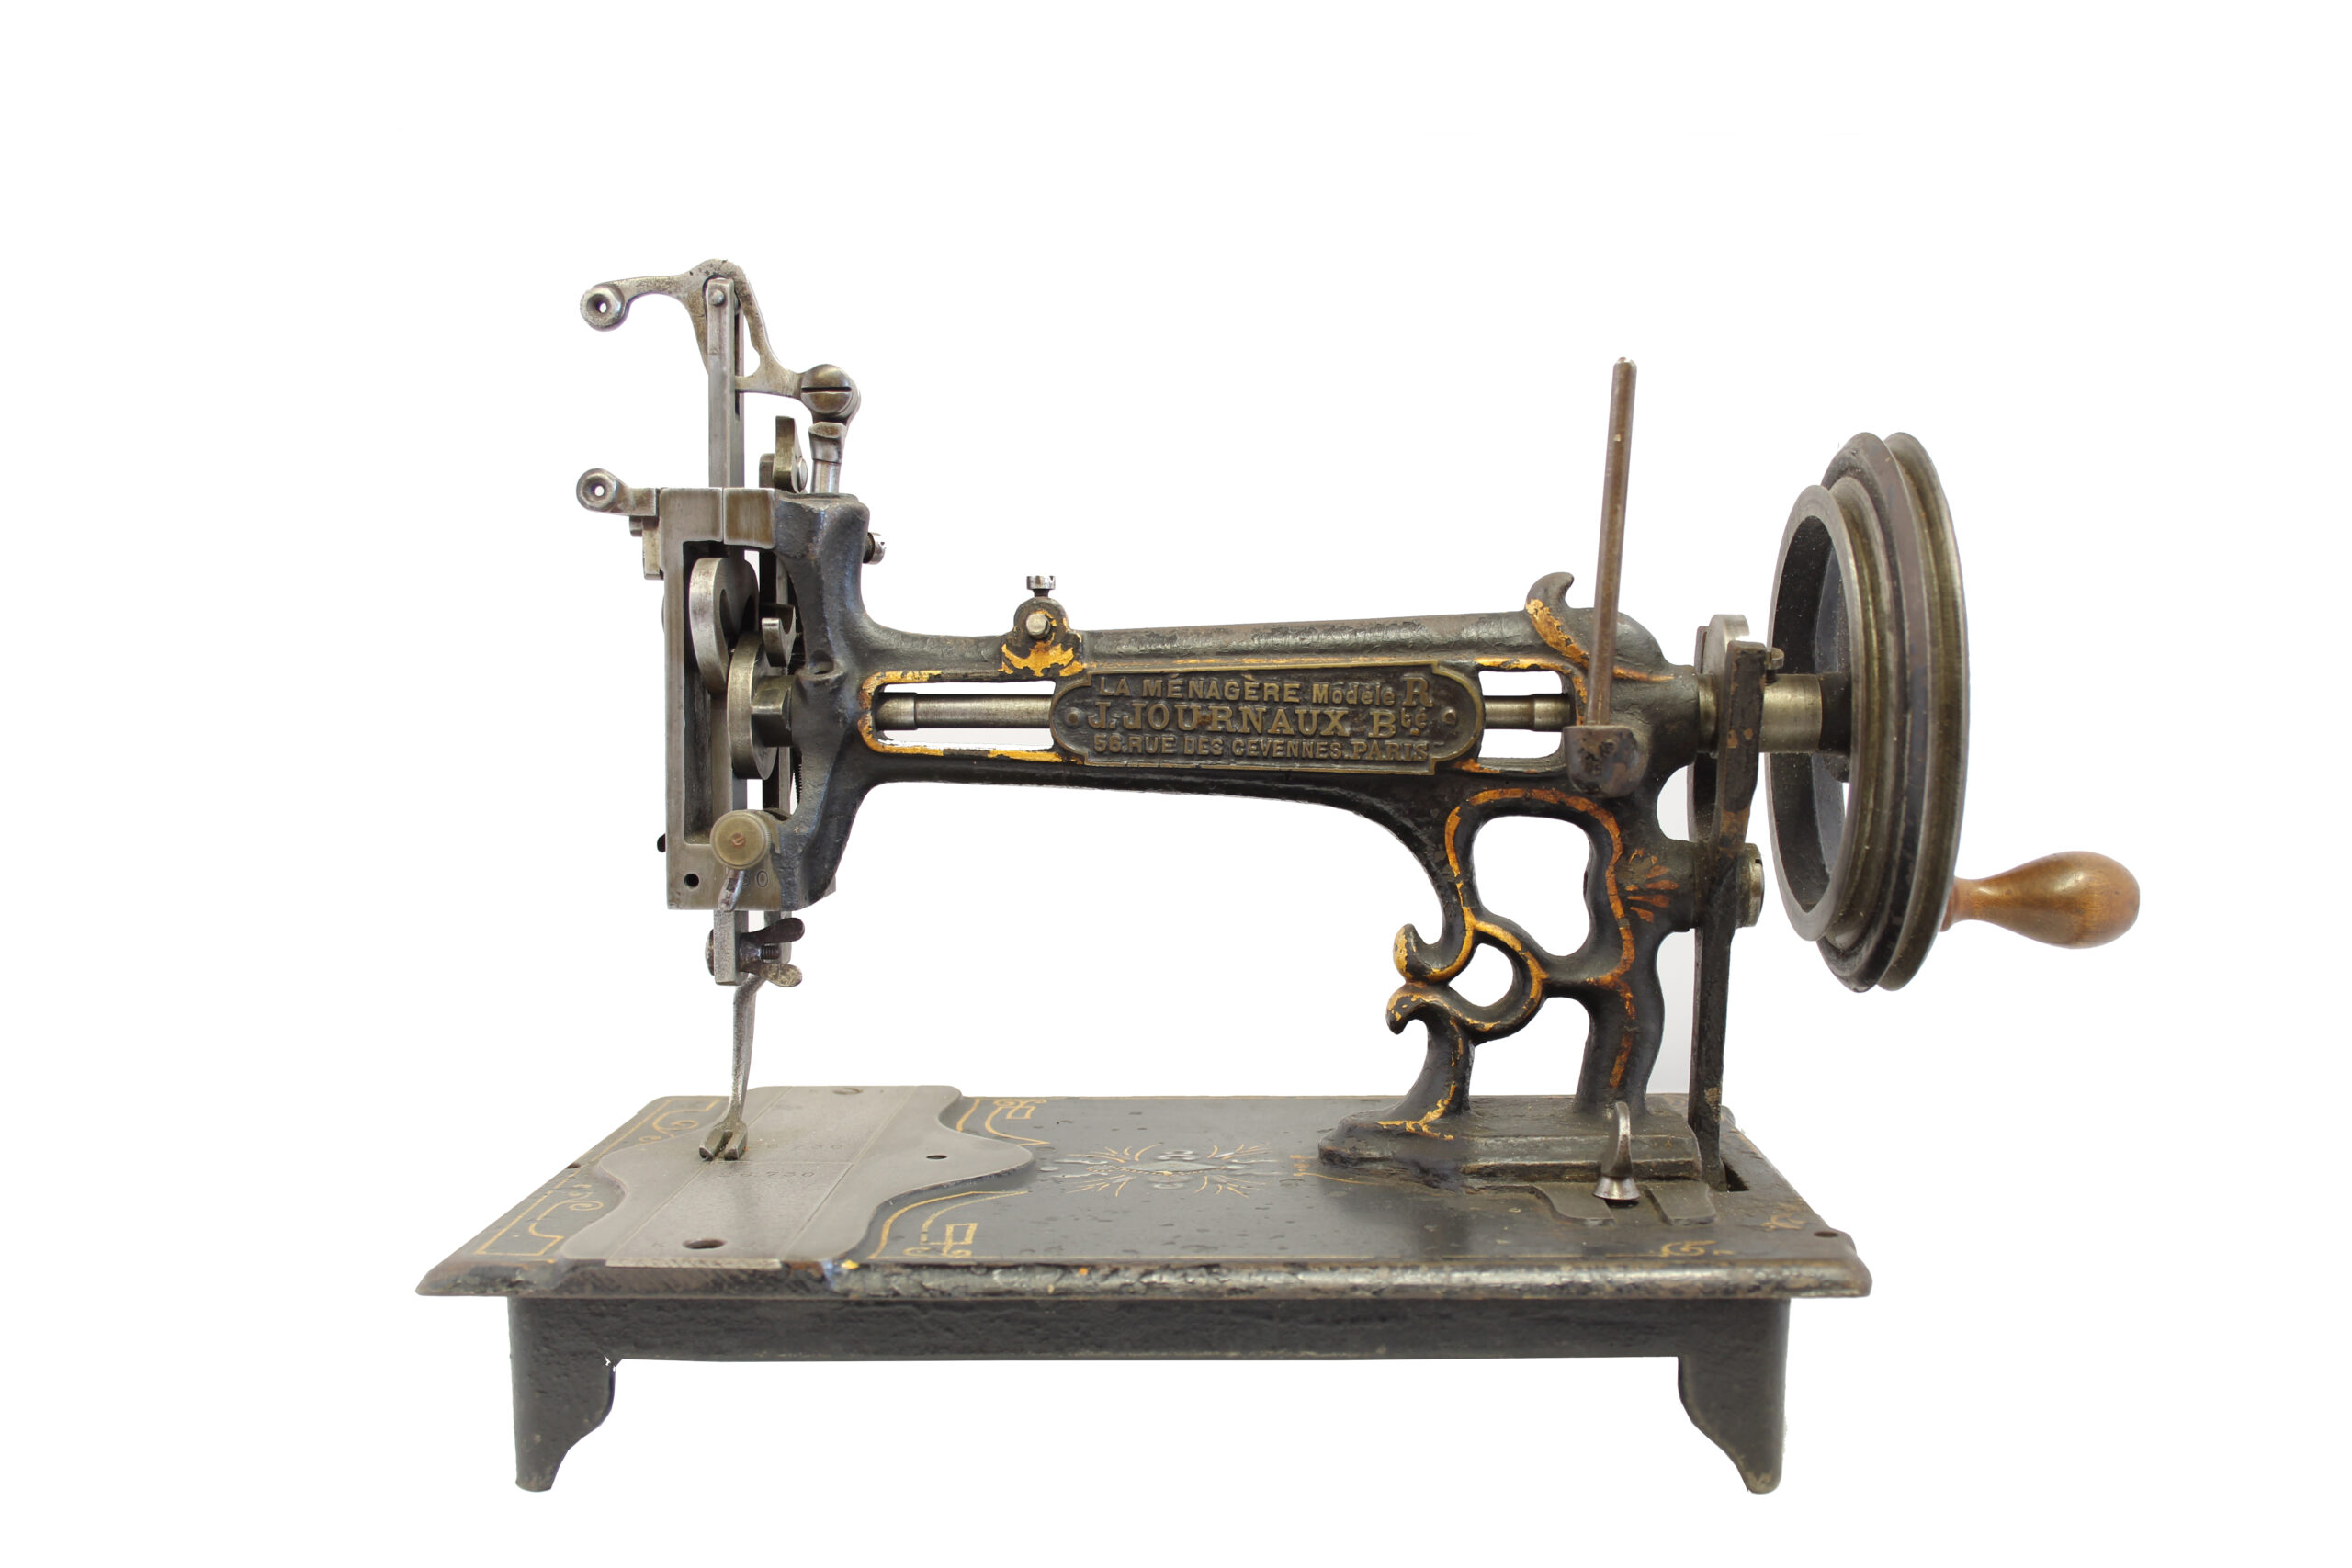 Singer Sewing Machines - Basalt Regional Library